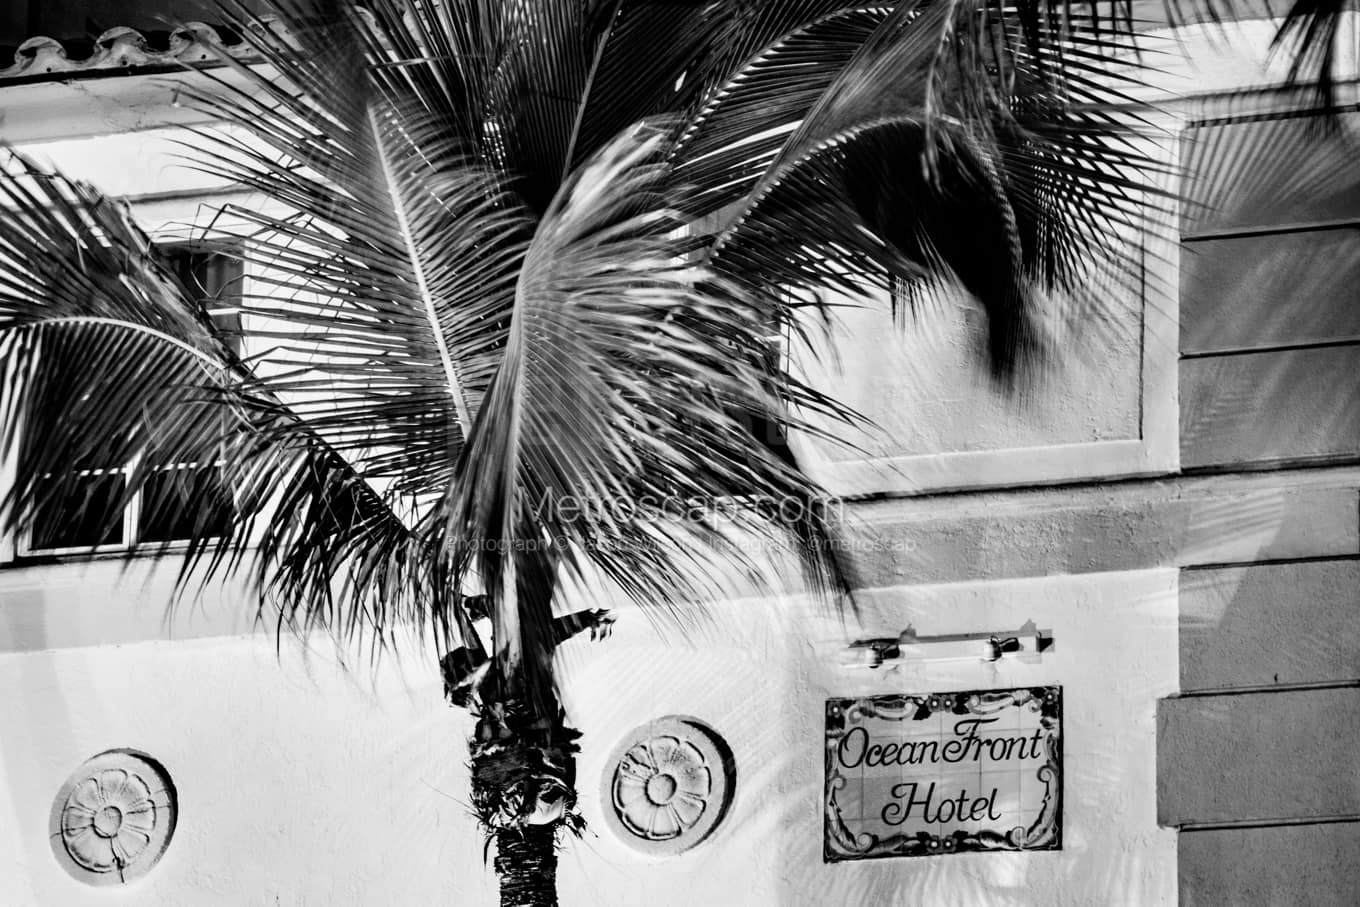 Black & White Miami Architecture Pictures